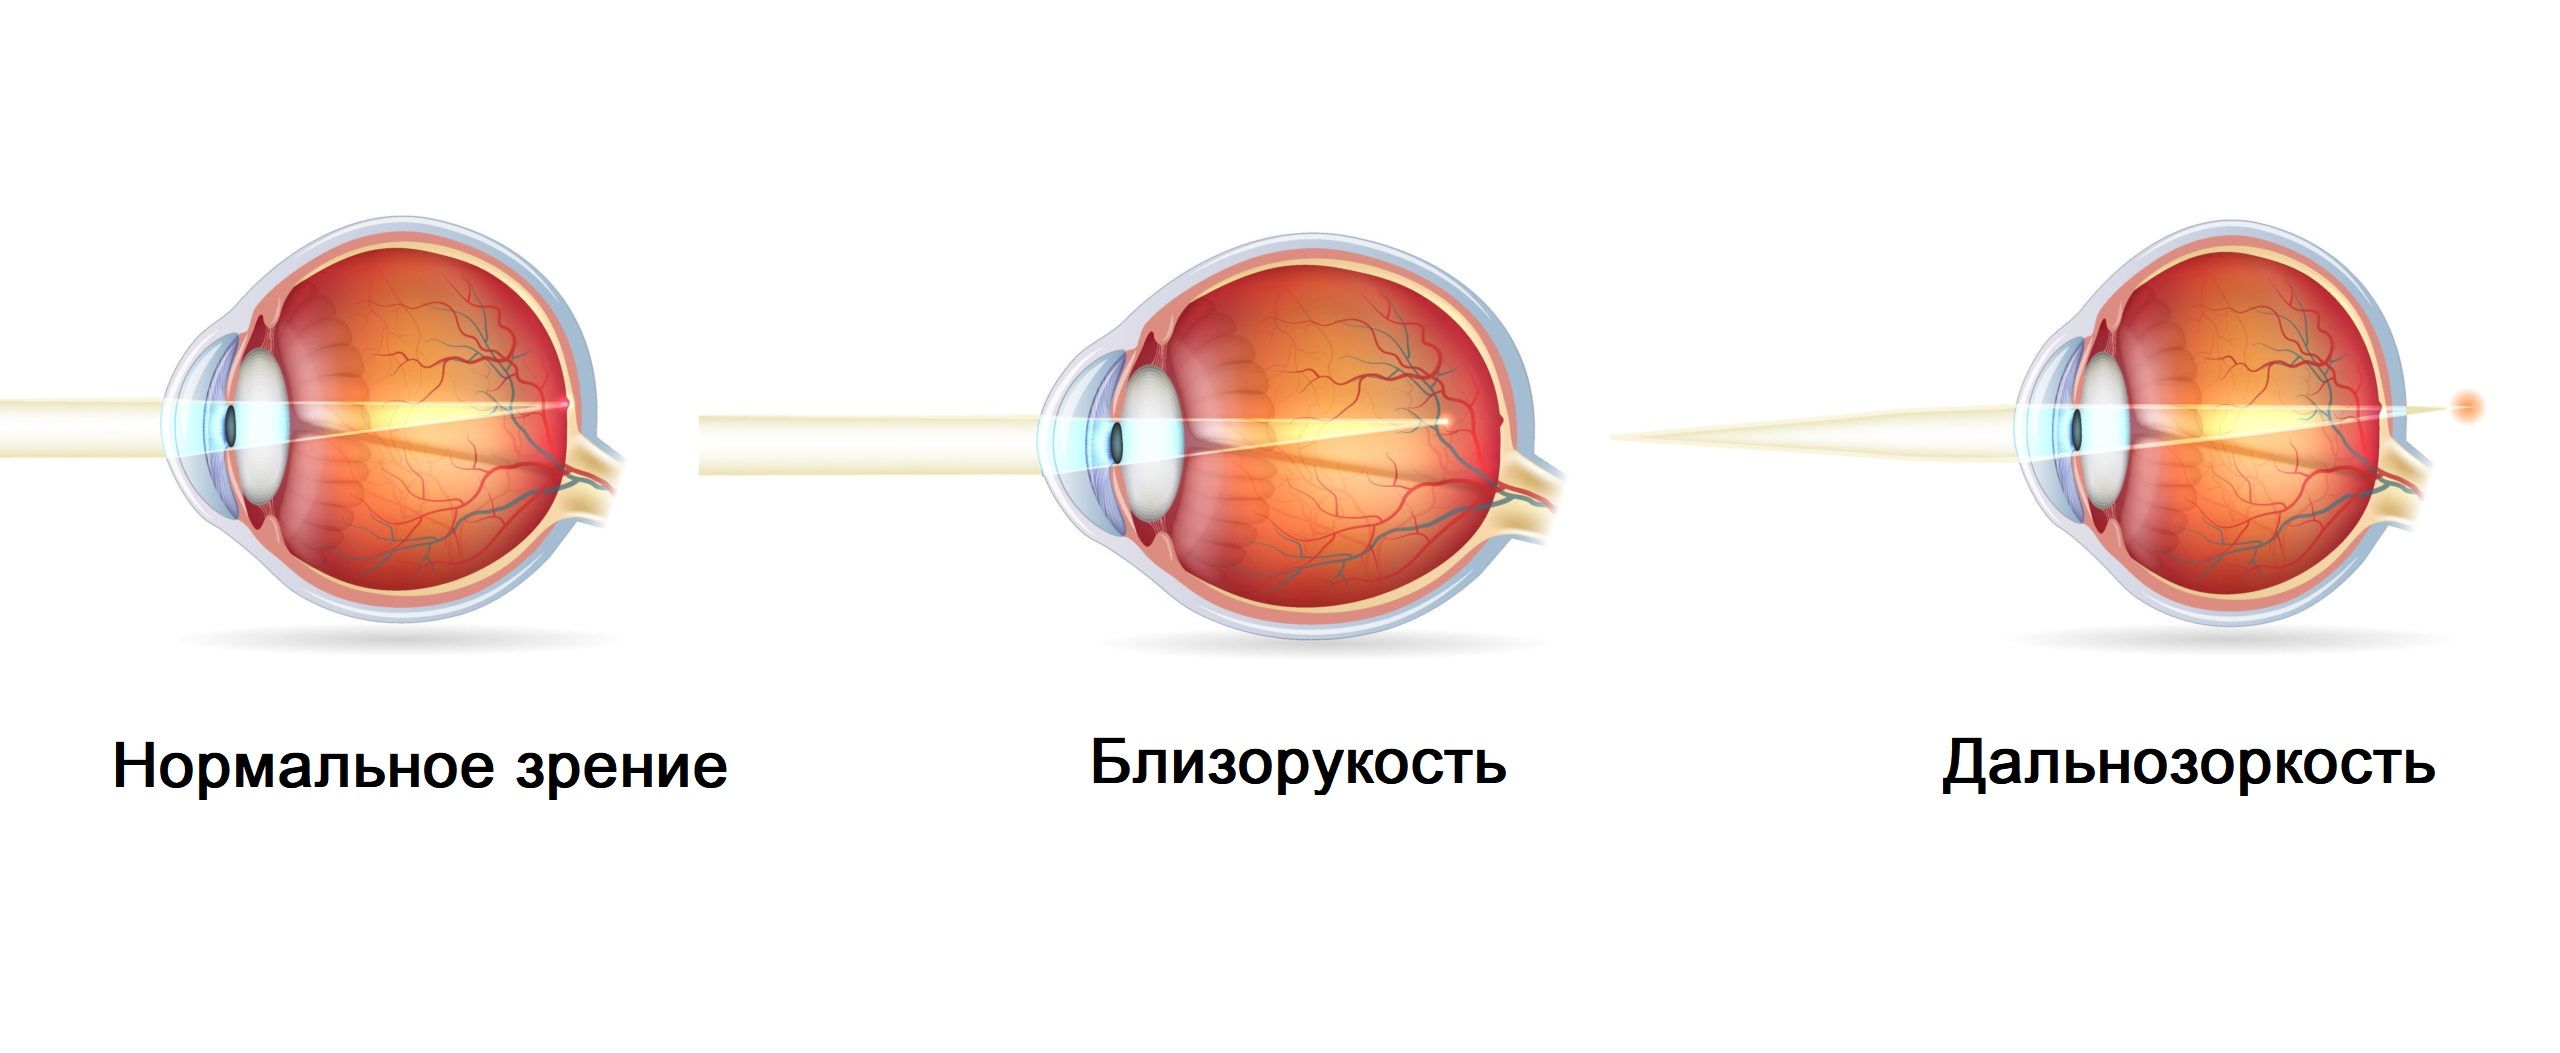 Нормальное зрение близорукость дальнозоркость